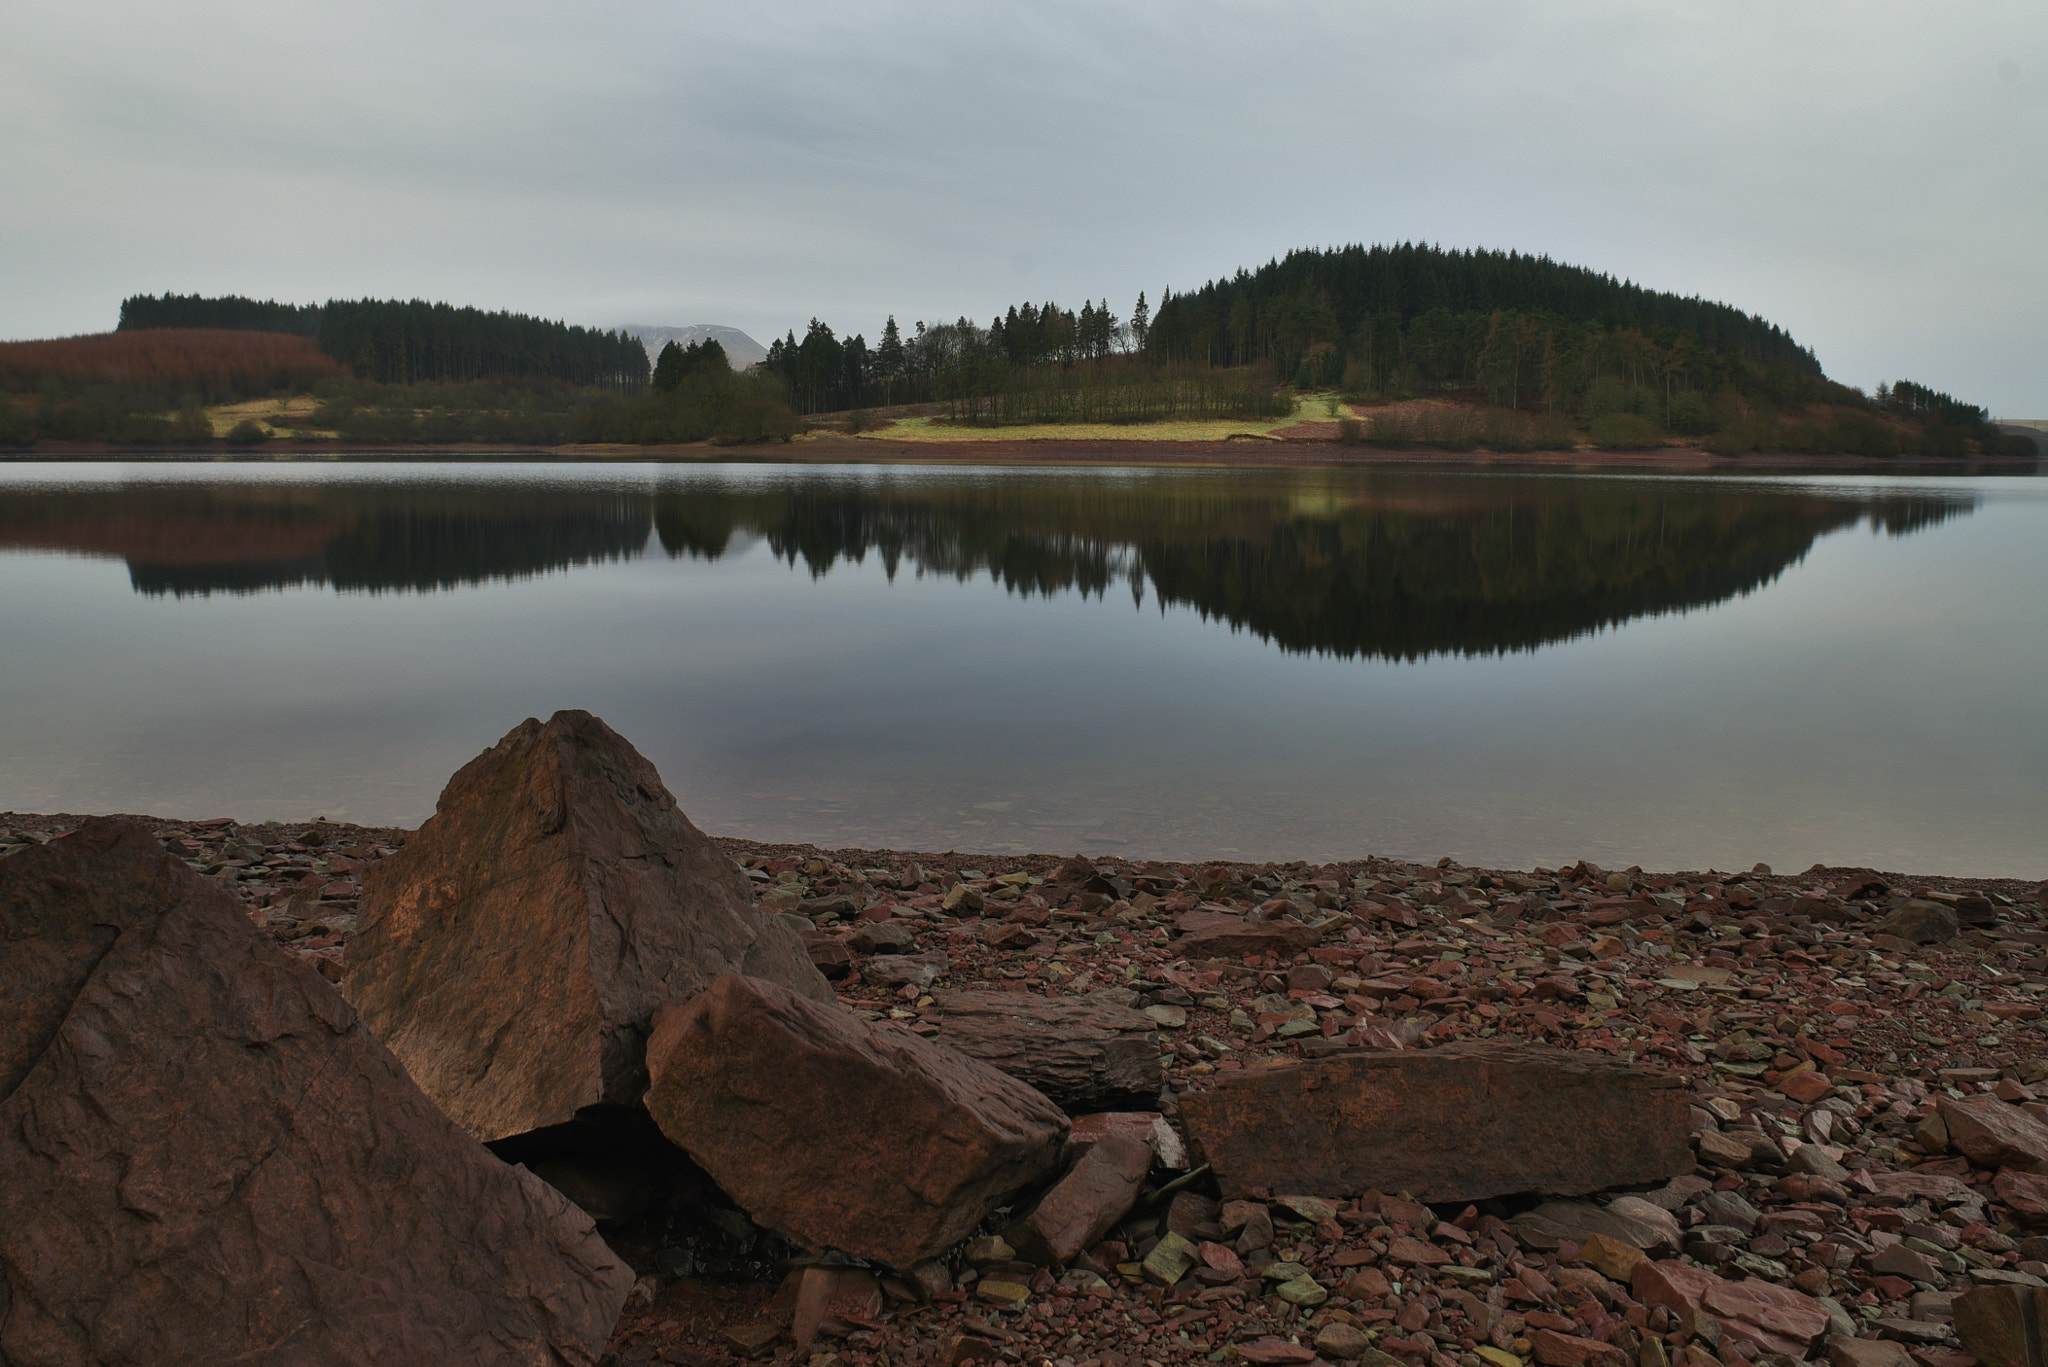 AF Nikkor 20mm f/2.8 sample photo. A still morning on usk reservoir photography